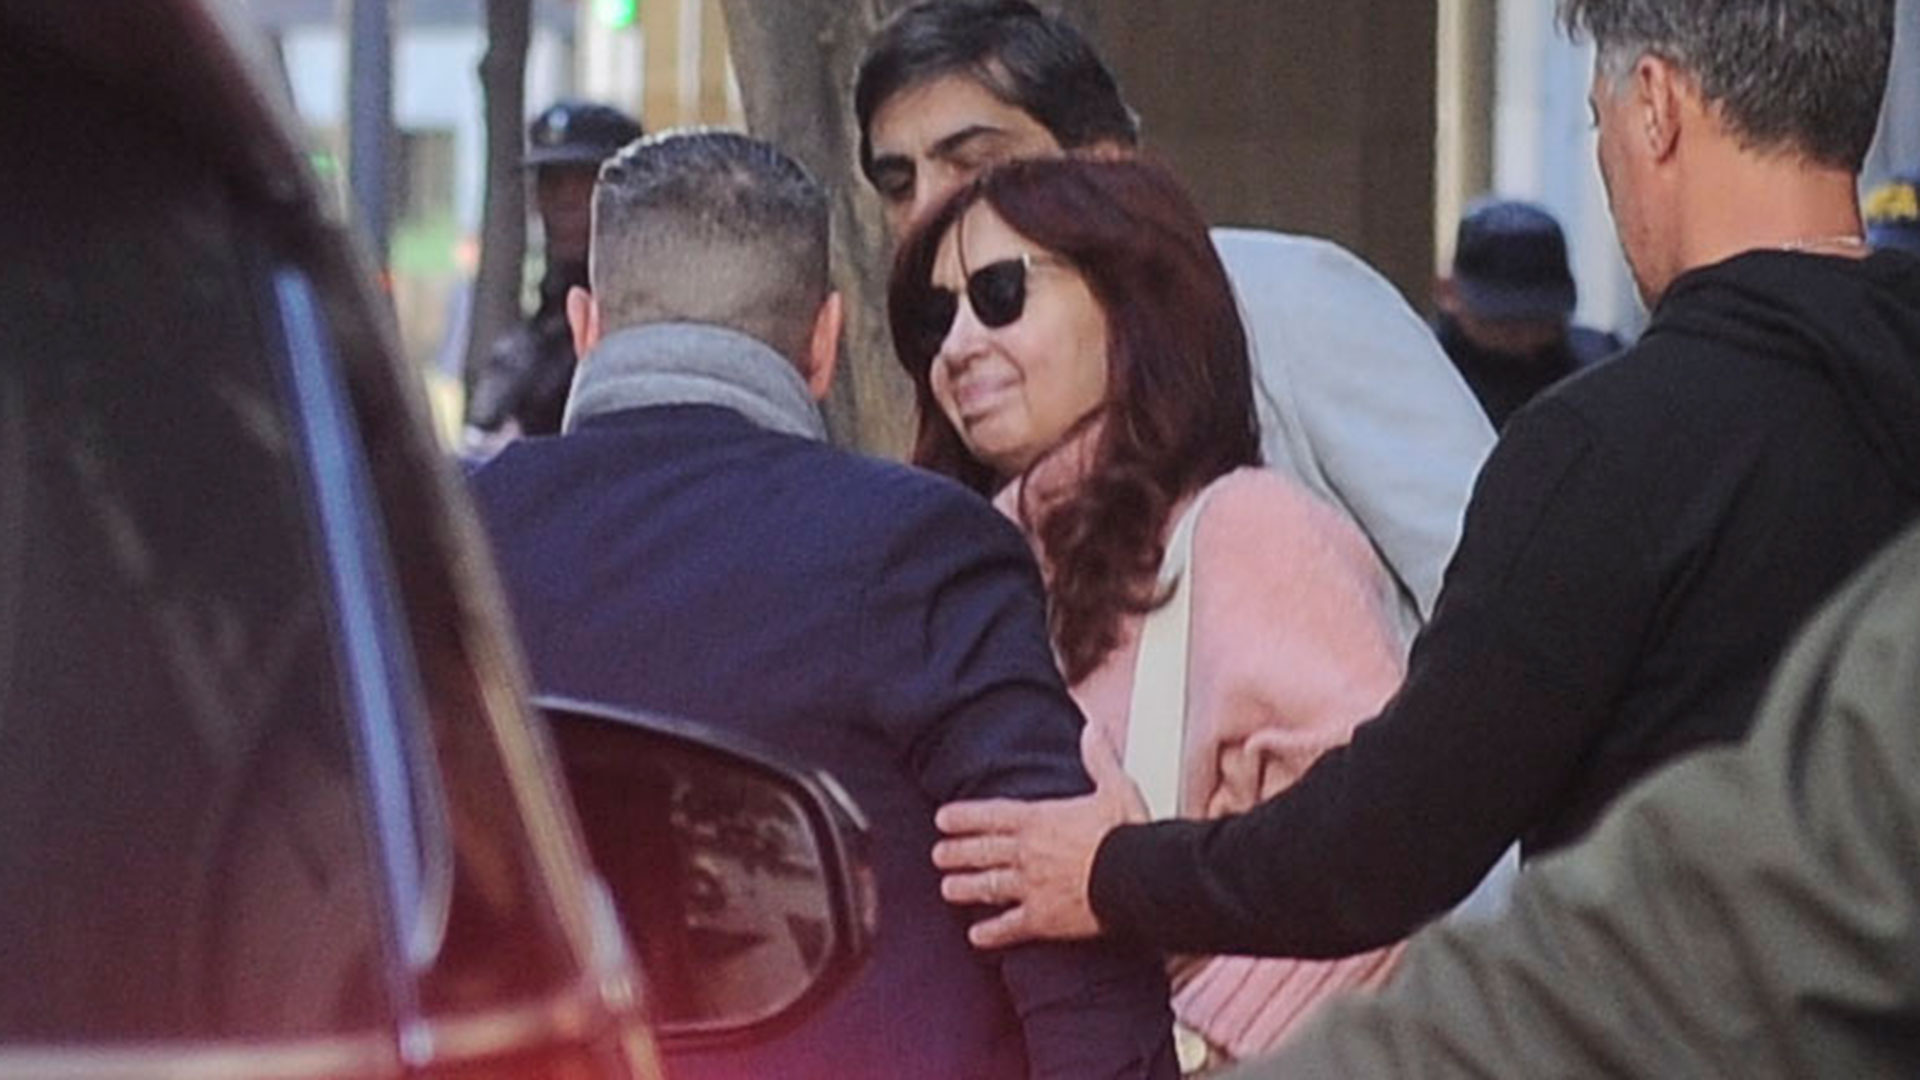 El diputado nacional reveló cómo se enteró del atentado a Cristina Kirchner y su altercado con un policía.